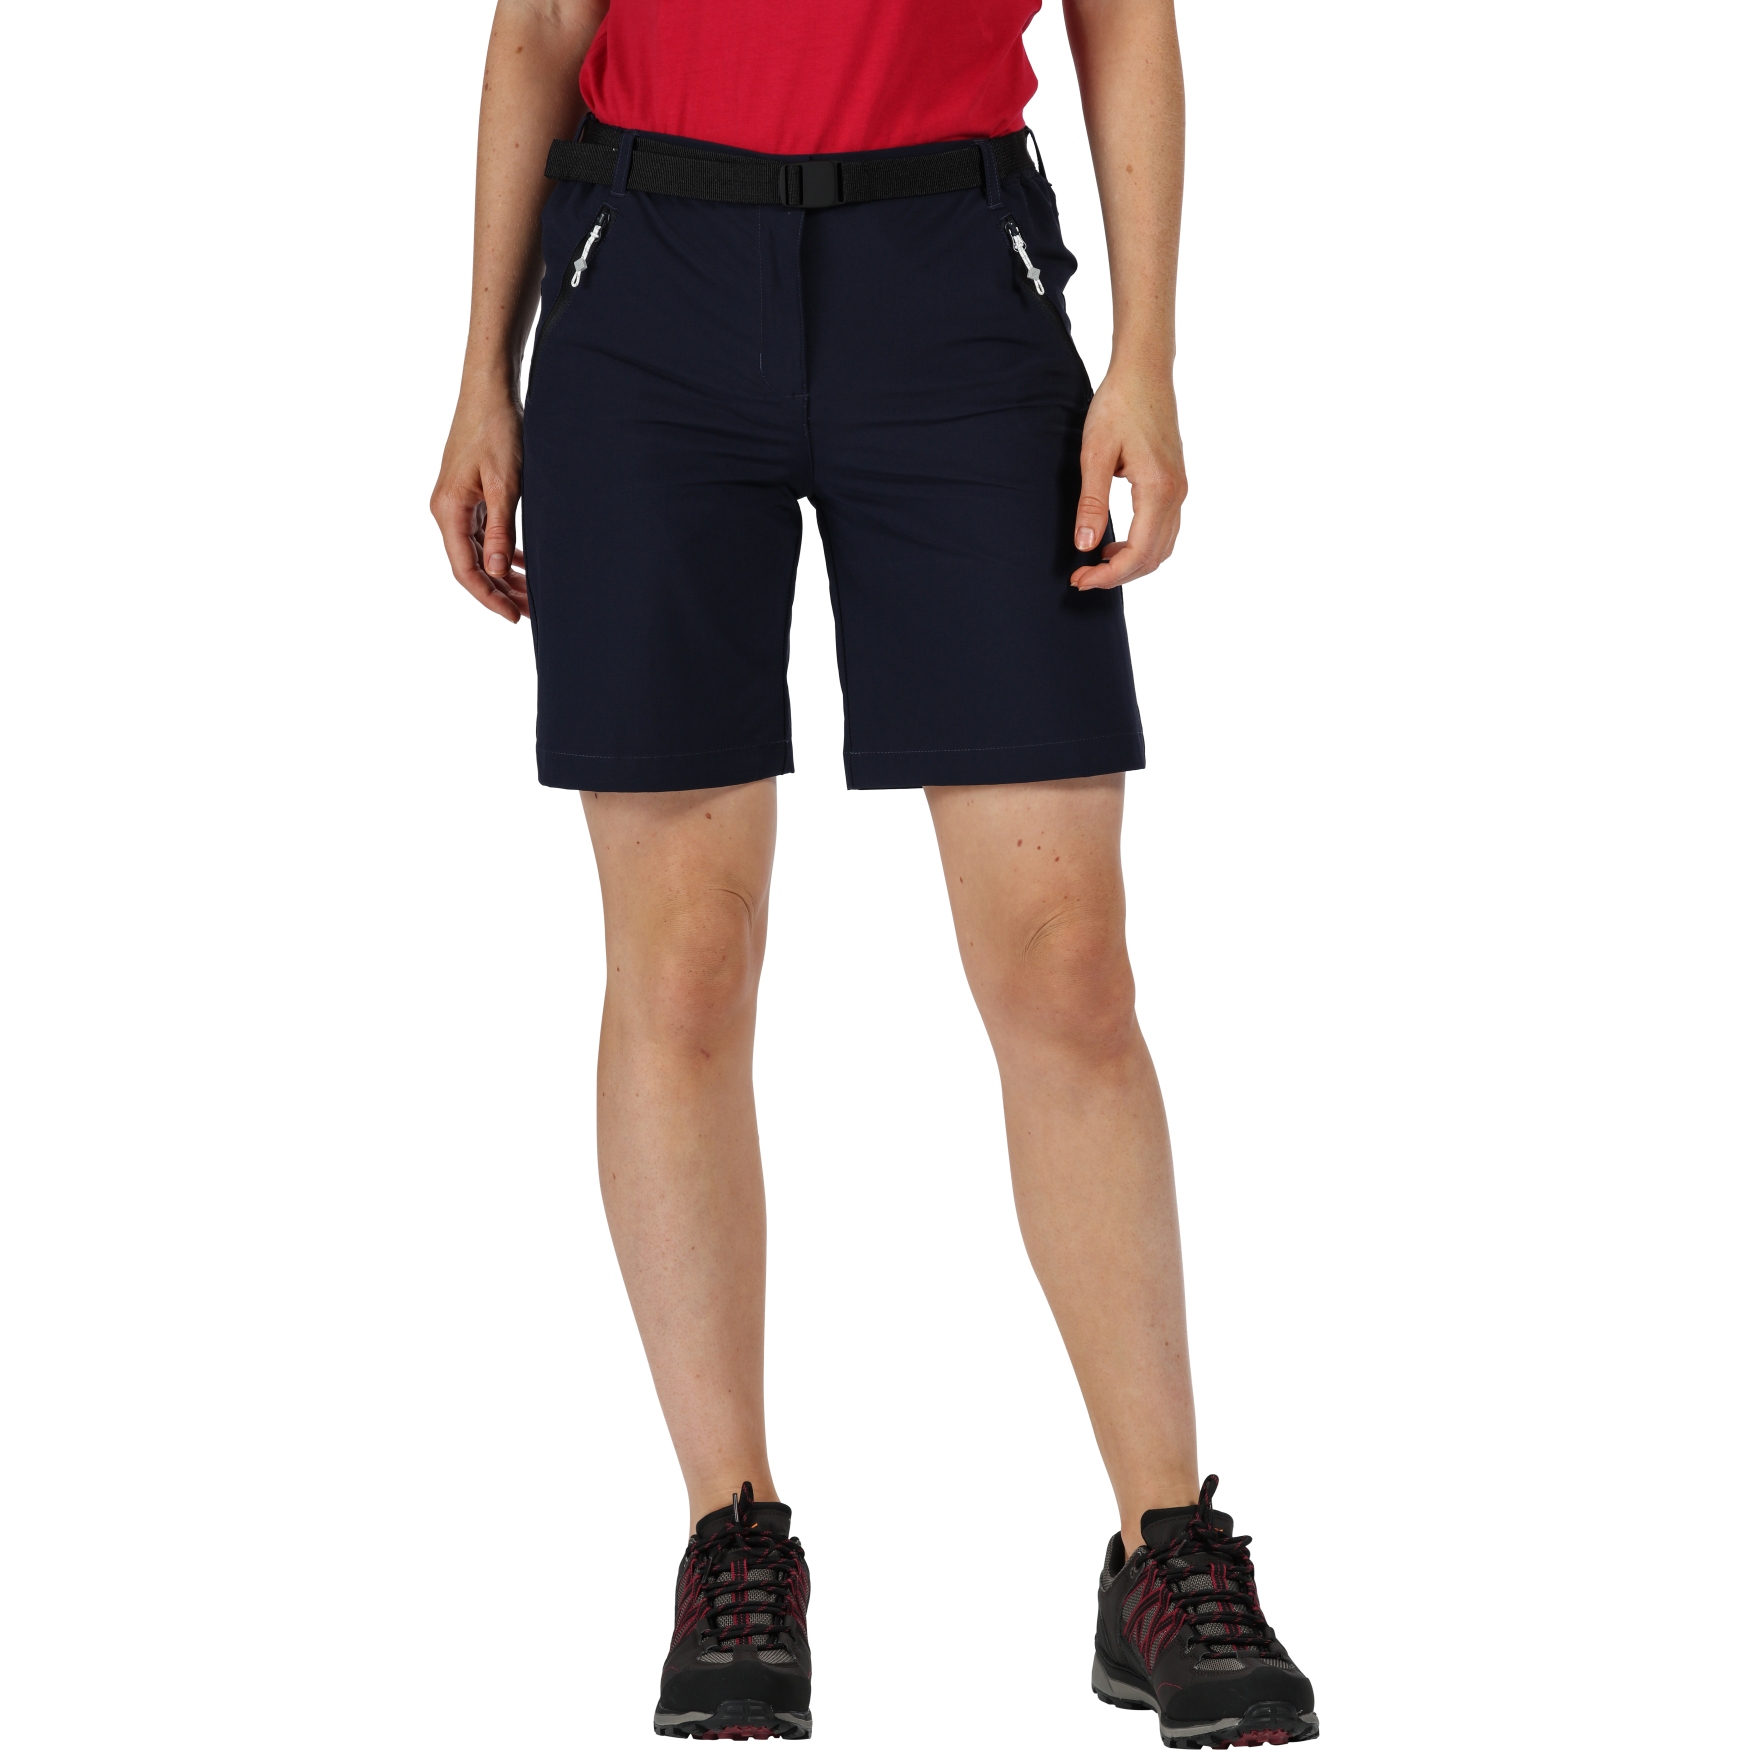 Produktbild von Regatta Xert Stretch Shorts III Damen - Navy 540